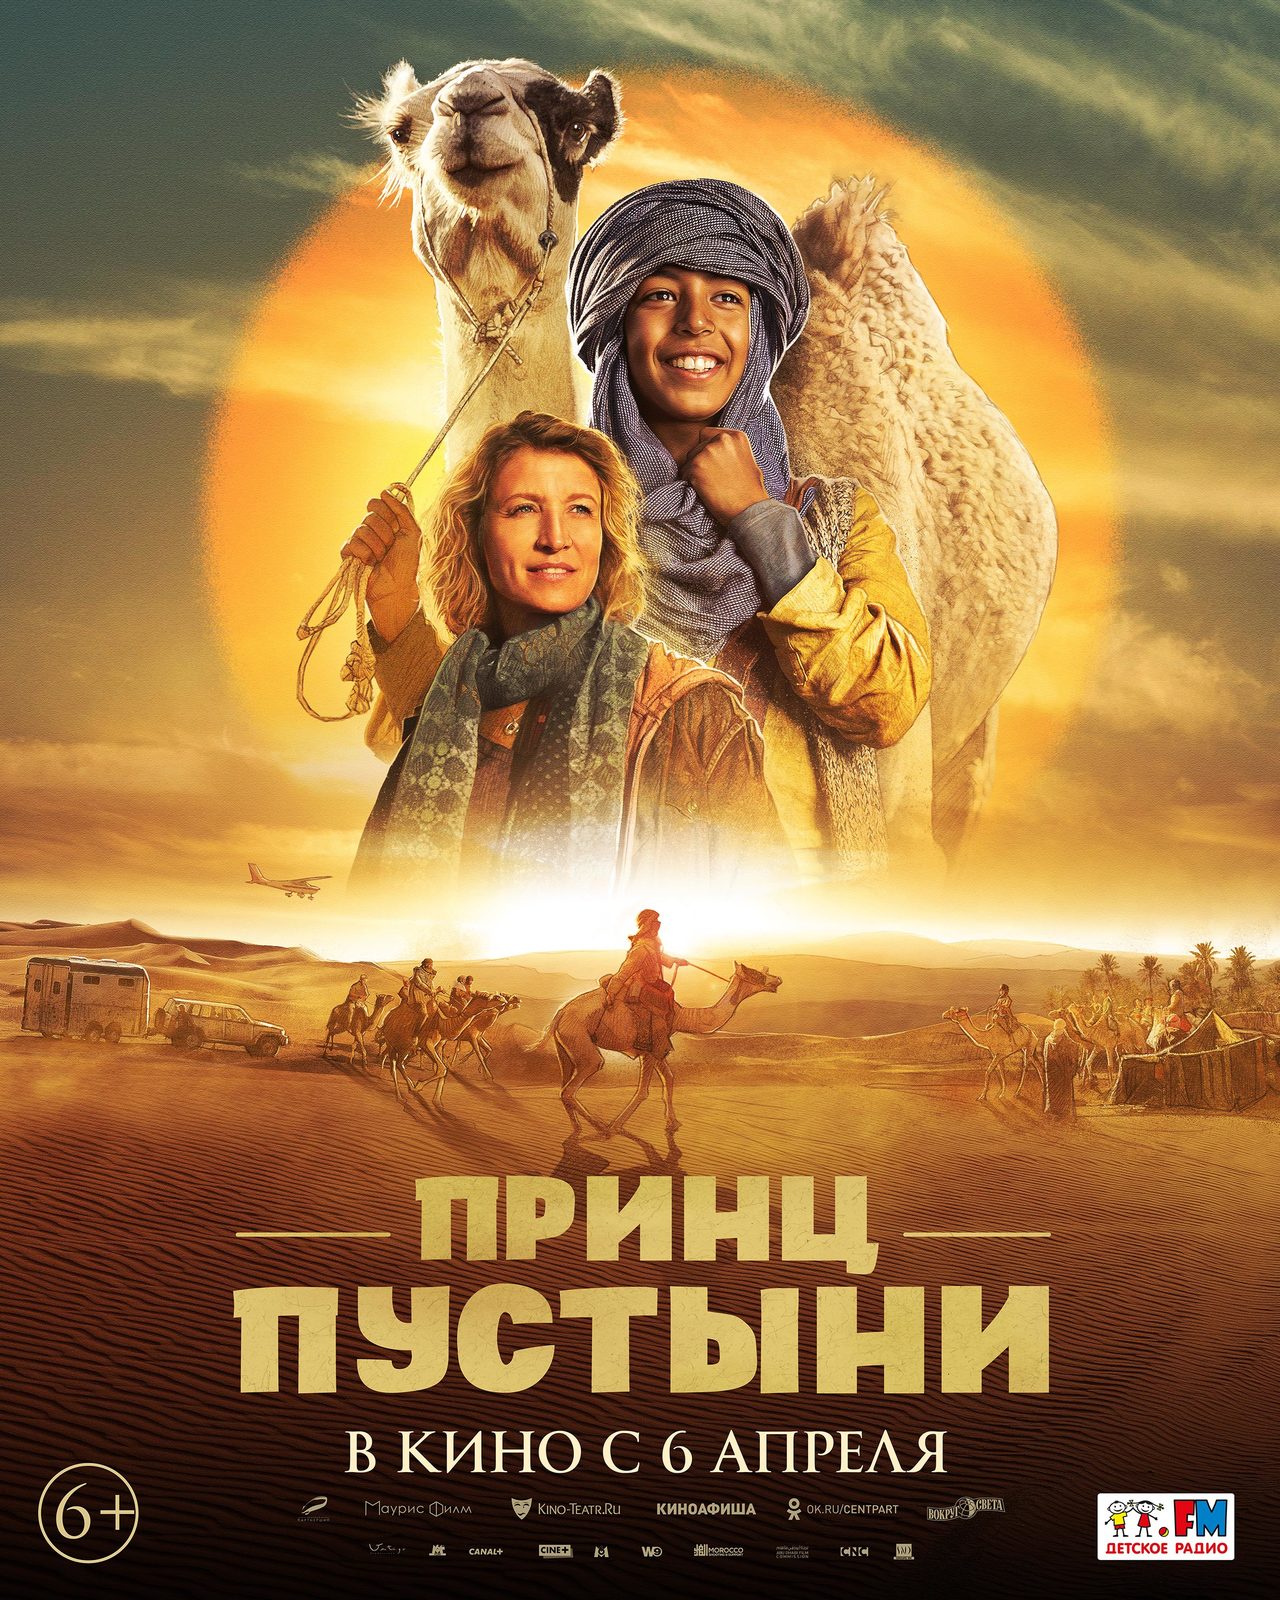 Мальчик подружился с верблюжонком в трейлере «Принца пустыни»